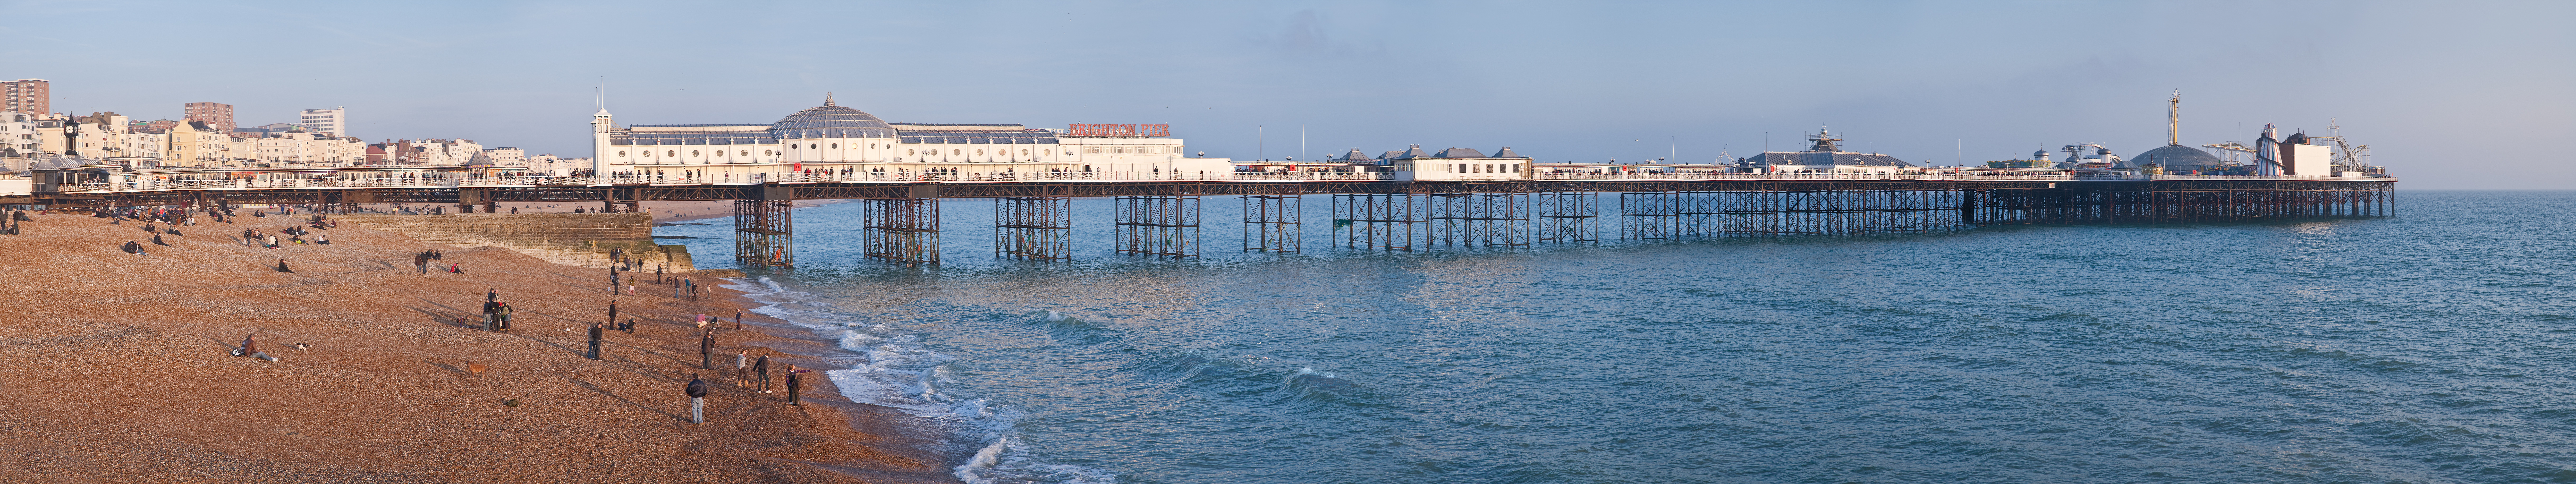 Brighton Palace Pier - Wikipedia